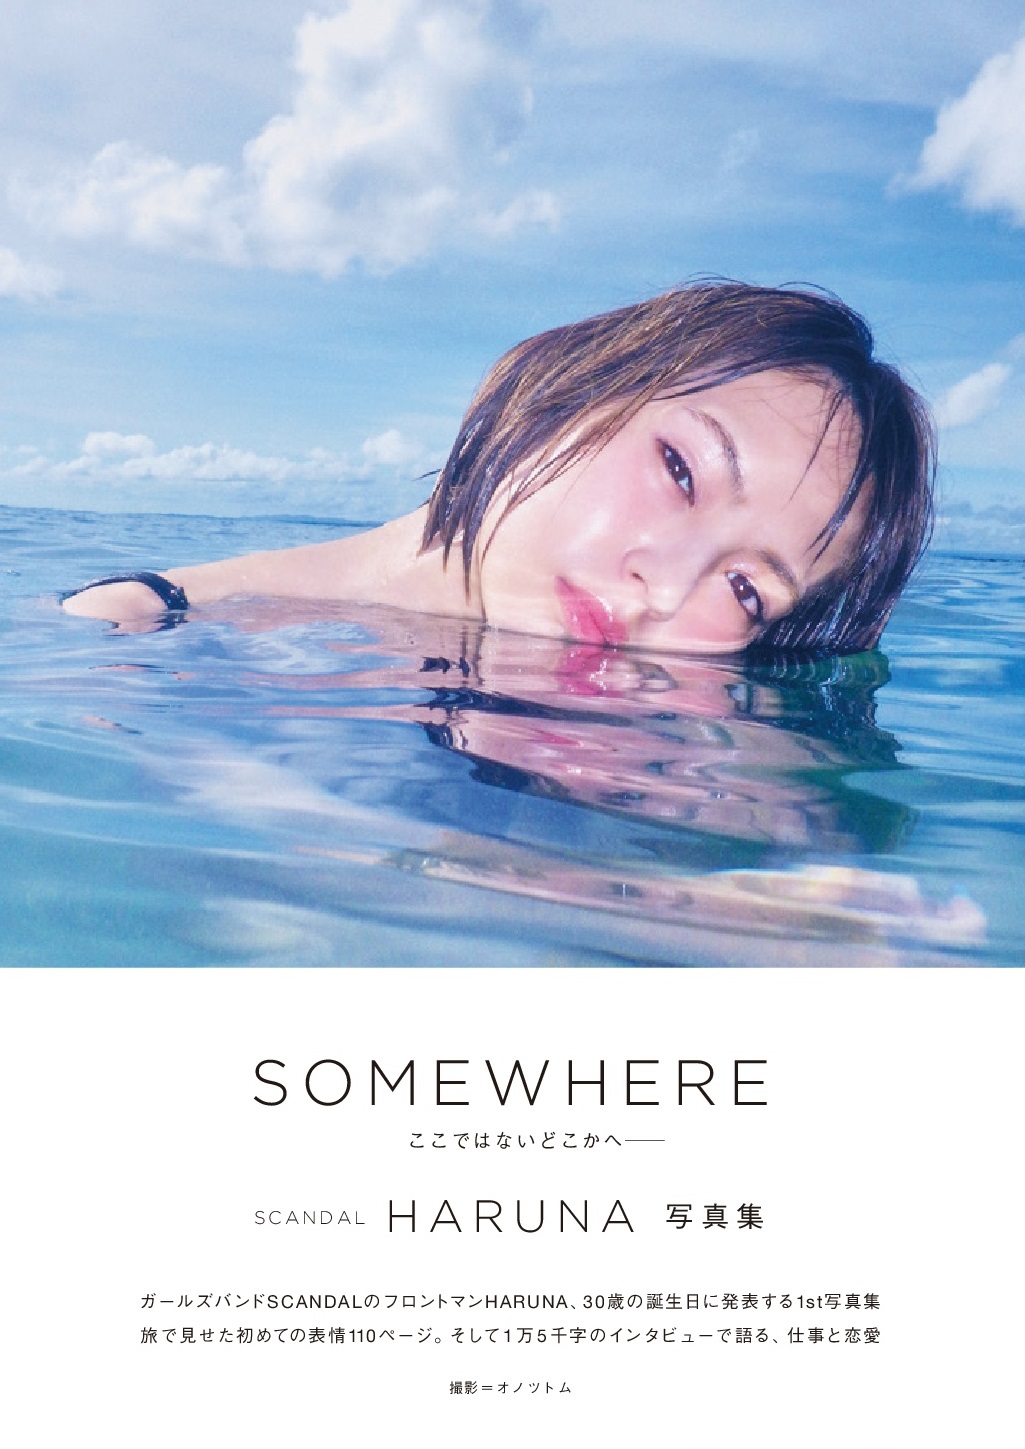 haruna_somewhere - 【HARUNA's 1st Photo Book『SOMEWHERE』】Interview With HARUNA Scandal-haruna-somewhere